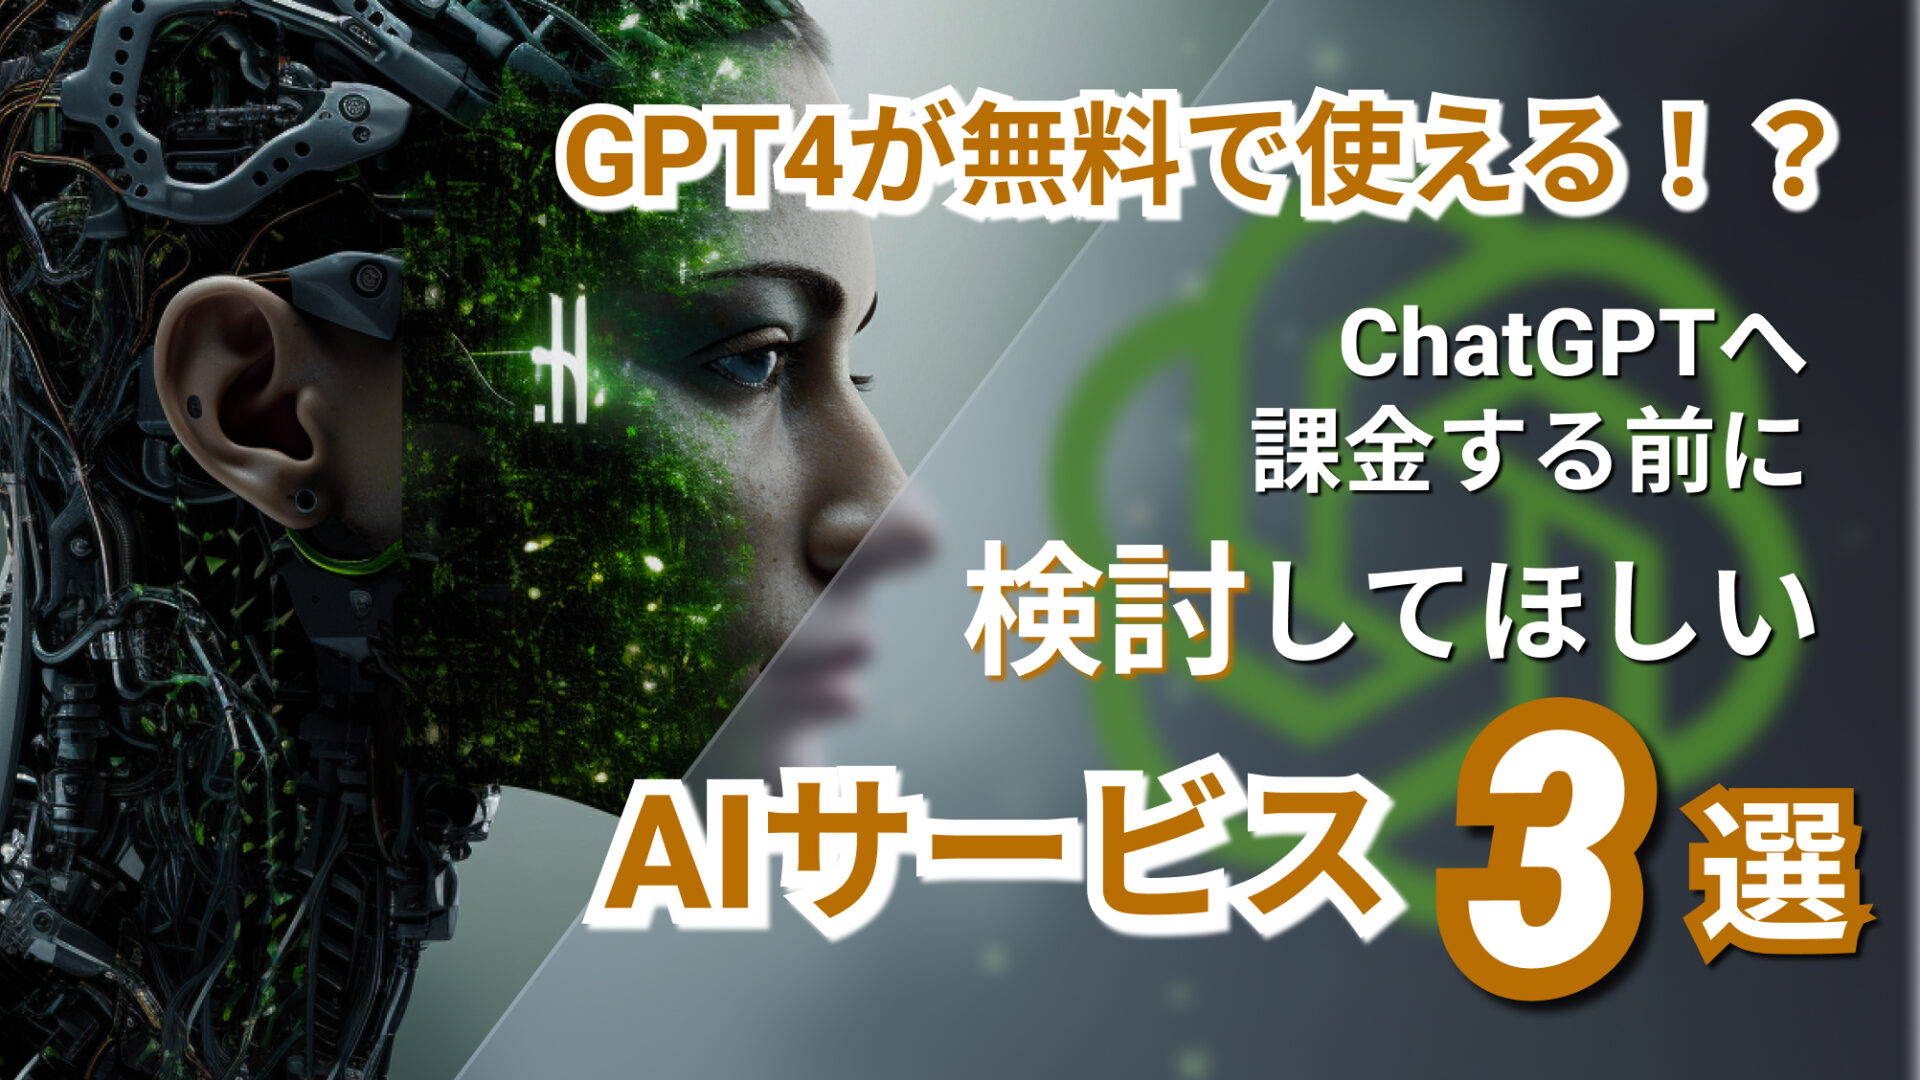 ChatGPT GPT4 AIサービス 無料